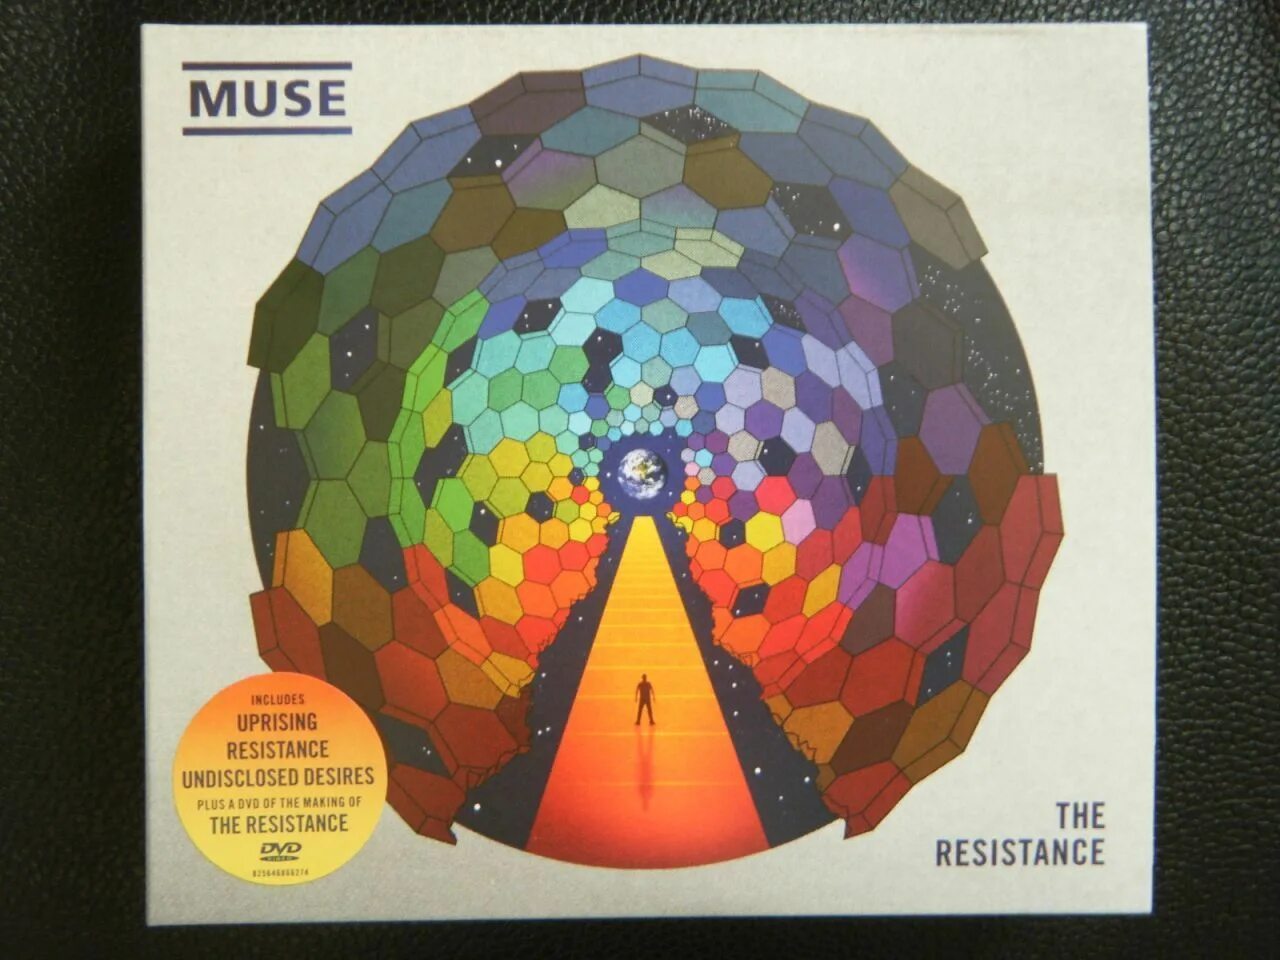 Muse undisclosed desires. Muse Resistance album. Muse Resistance обложка. Undisclosed Desires Muse. Постер Muse - the Resistance.